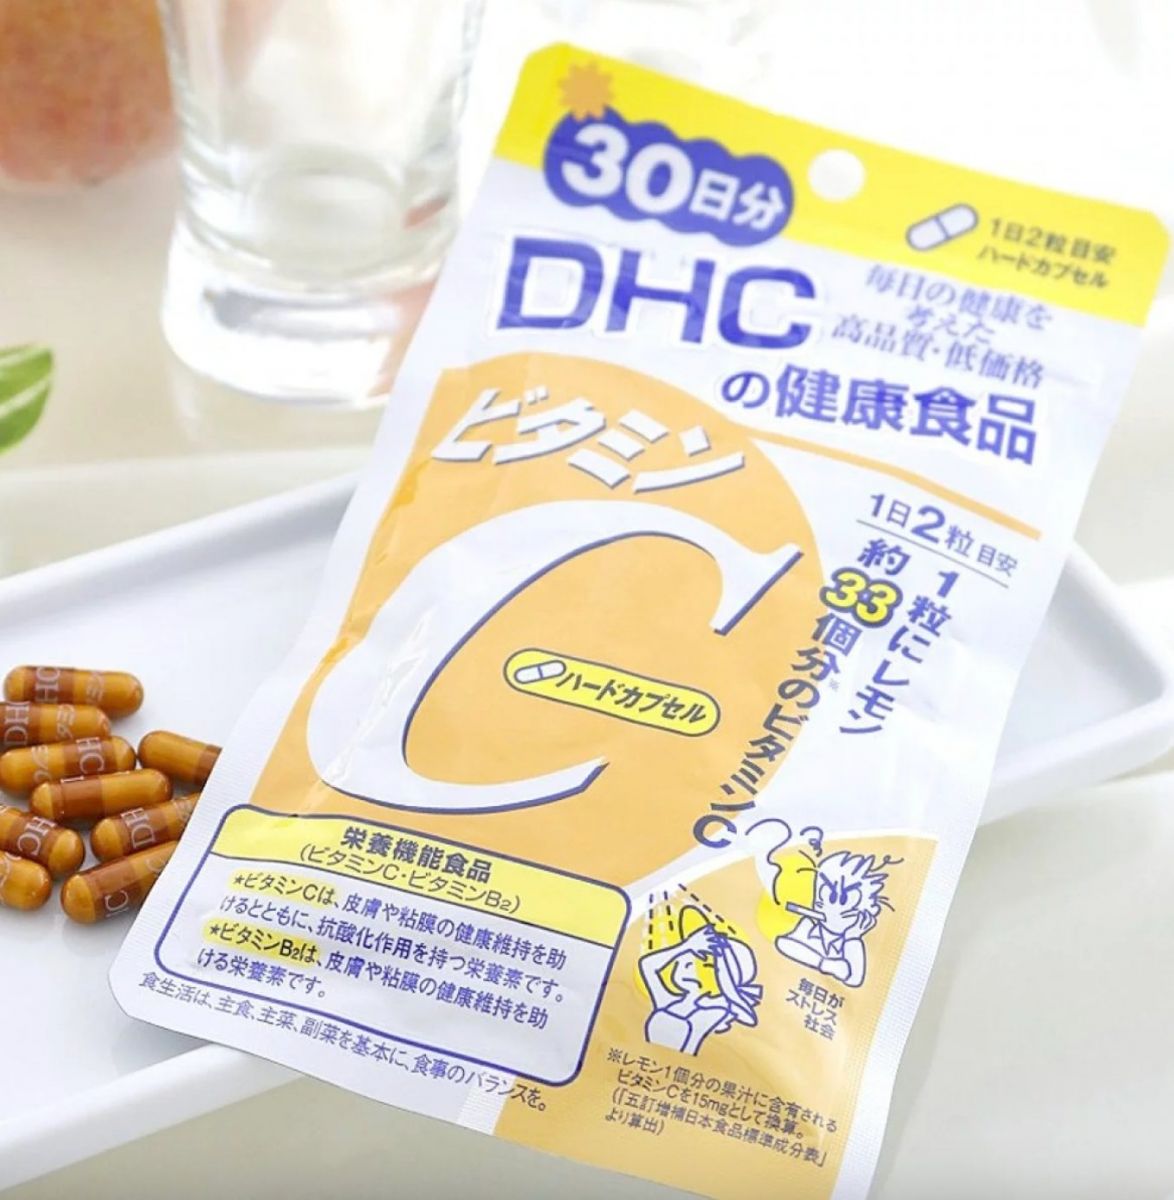 DHC Vitamin C cung cấp nguồn vitamin làm đẹp da và nâng cao sức khỏe